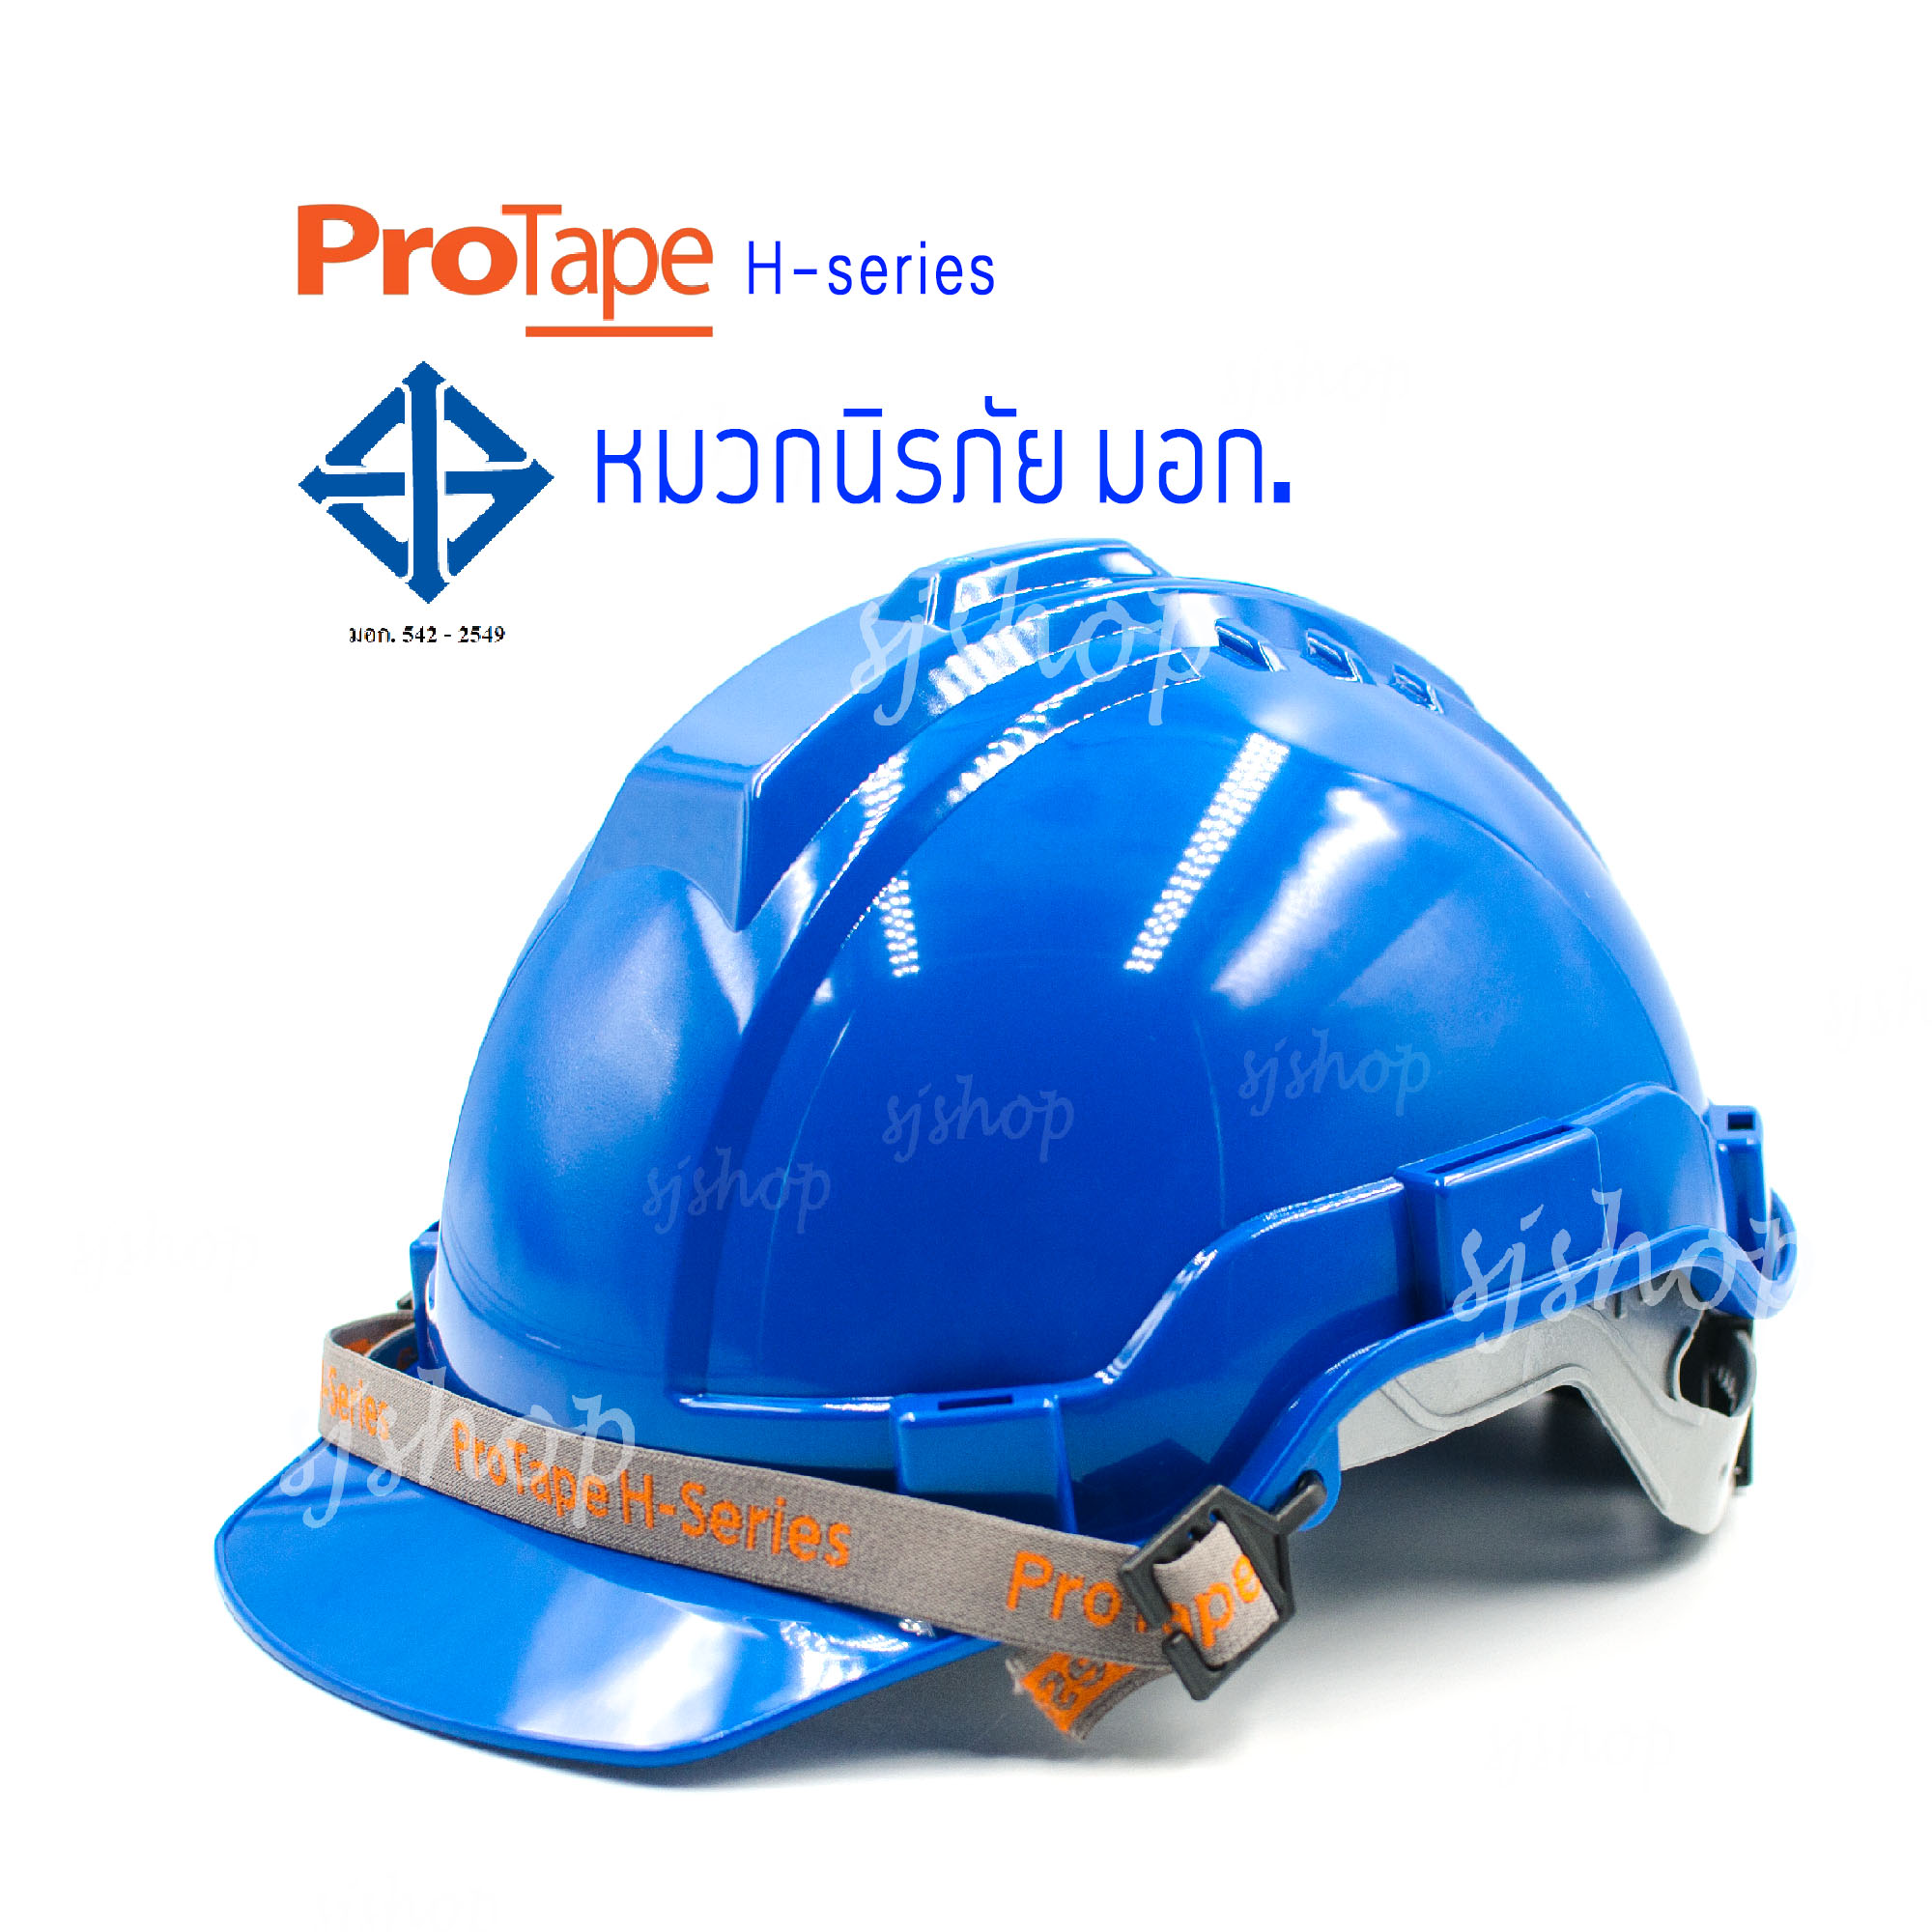 PROTAPE H-series สีน้ำเงิน หมวกนิรภัย หมวกเซฟตี้ หมวกวิศวะ หมวกก่อสร้าง หมวกกันกระแทก แบบปรับหมุน สายรัดคางยางยืด SAFETY HELMET (High Impact ABS) น้ำหนักเบา แข็งแรง ป้องกันแรงกระแทกสูง ผ่านการรับรองมาตรฐานความปลอยภัย มอก.368-2554 ผลิตในประเทศไทย